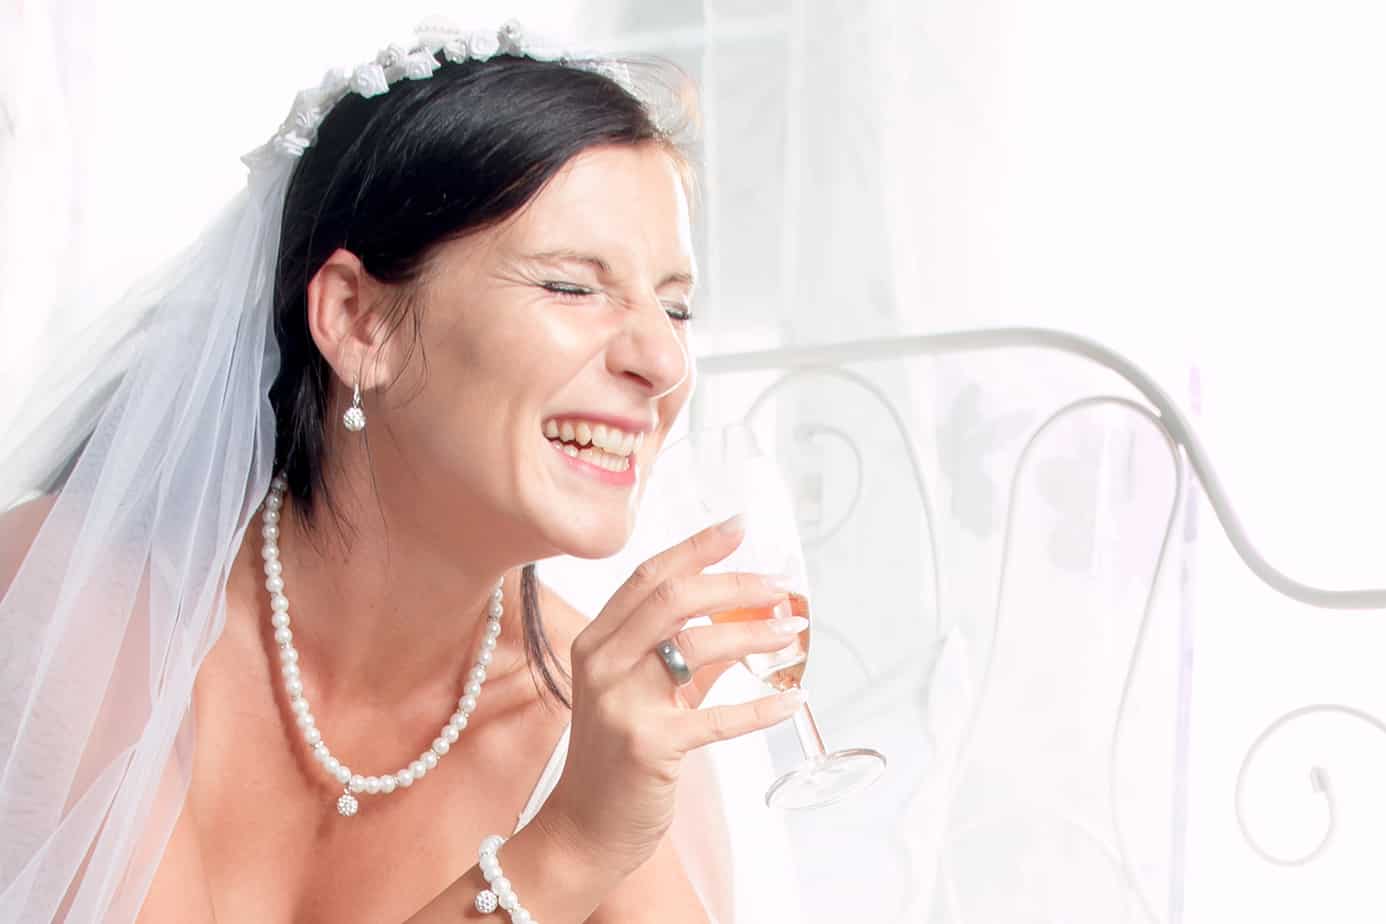 Braut mit Sektglas beim Getting Ready Shooting | Hochzeitsfotograf bilderschlag Erfurt